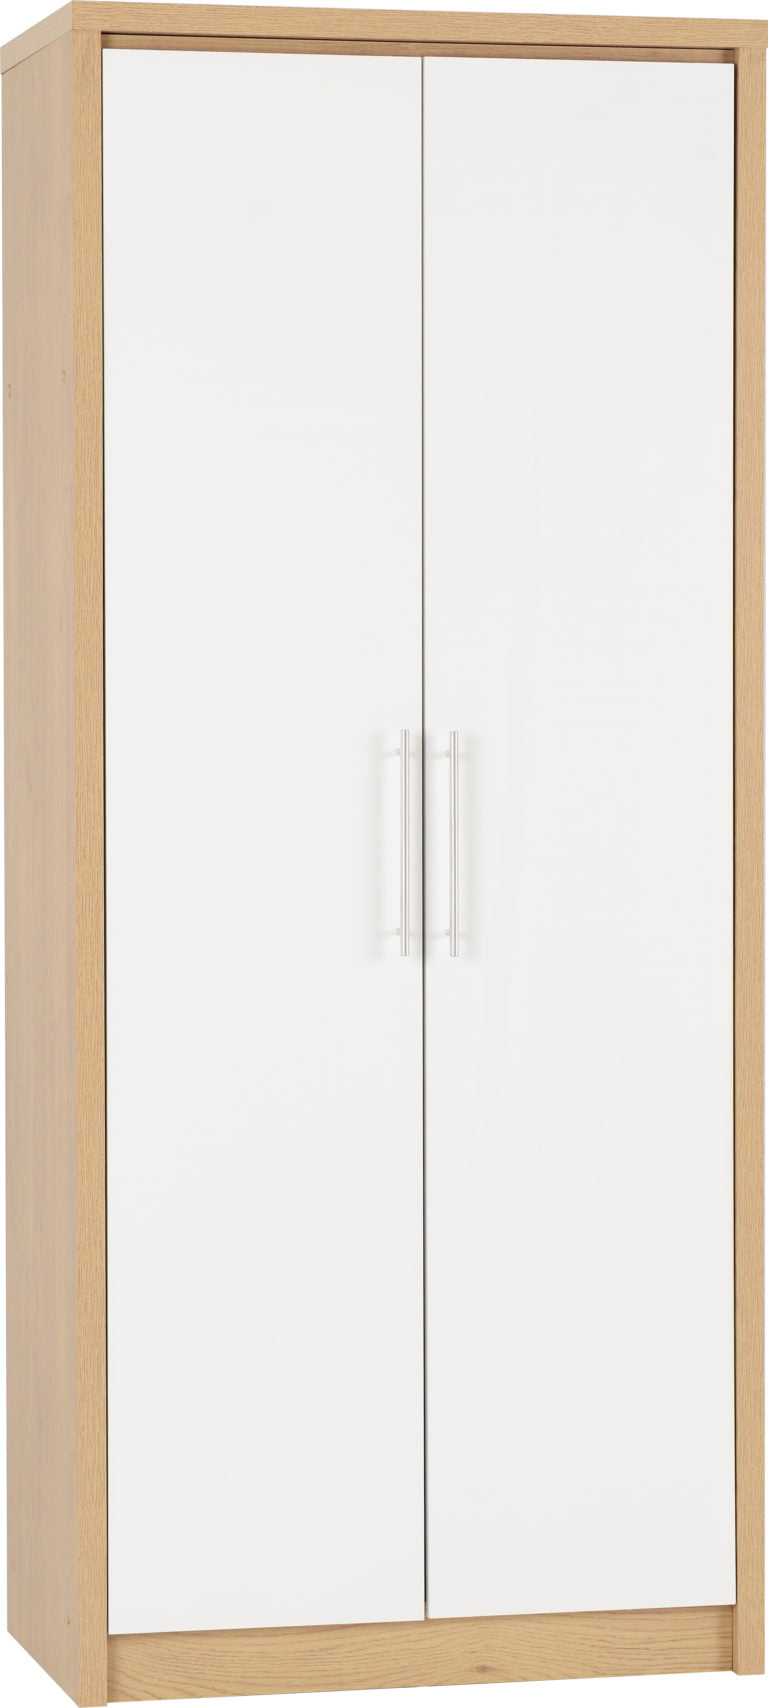 Seville Bedroom Set - White High Gloss/Light Oak Effect Veneer